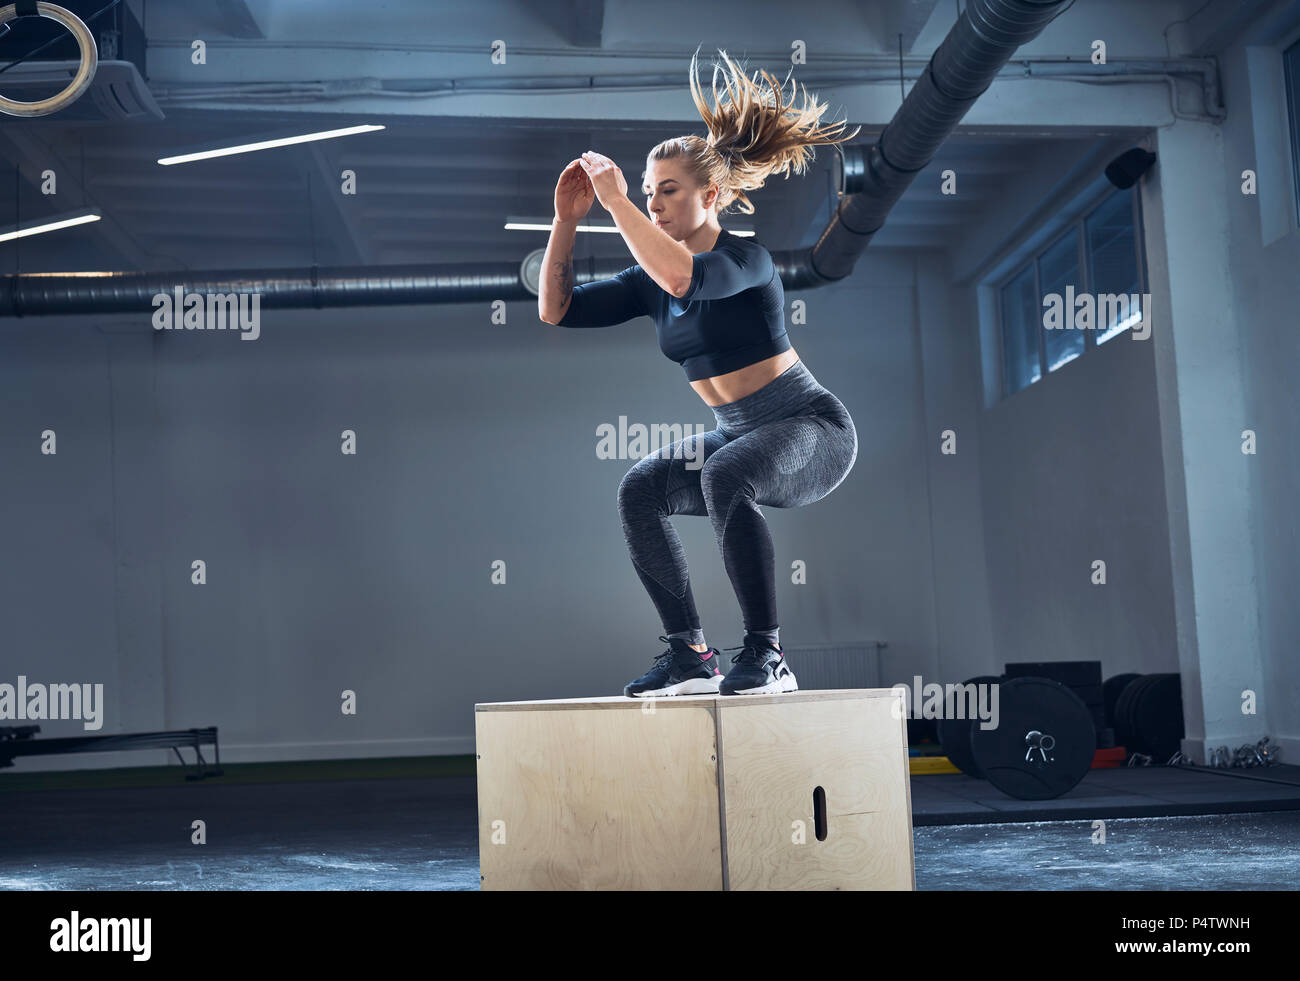 Mujer atlética haciendo ejercicio en el gimnasio de salto cuadro Foto de stock